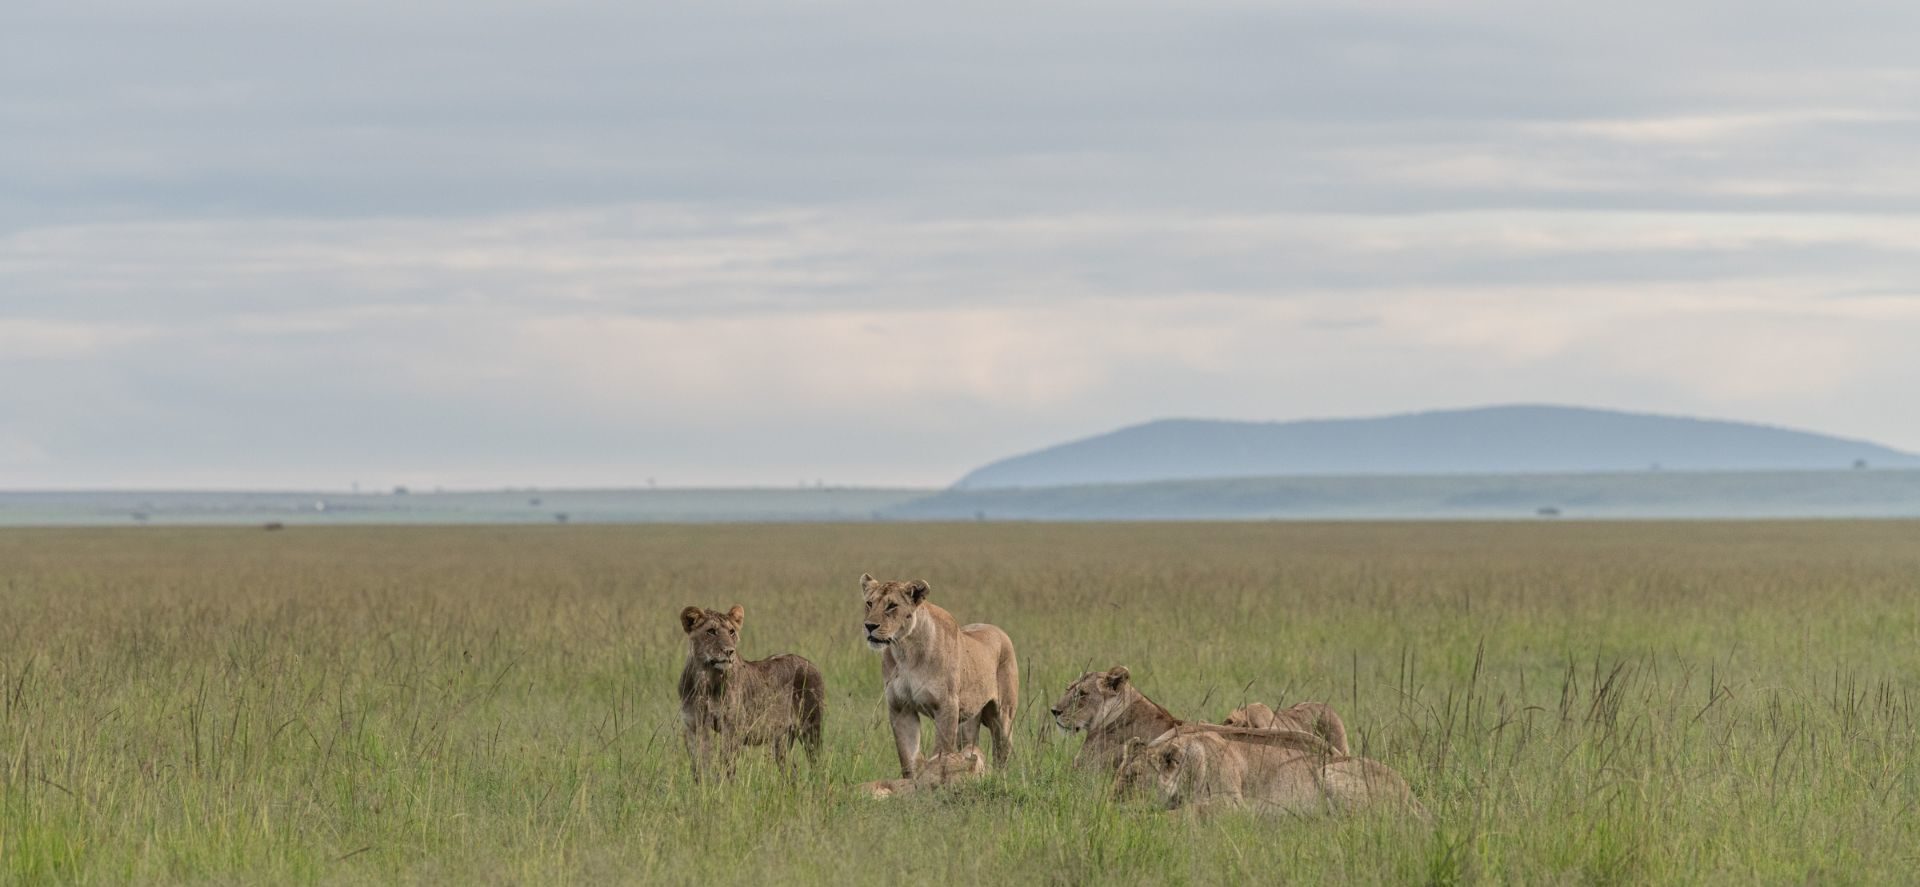 Masai Mara in February | Masai Mara Weather in February